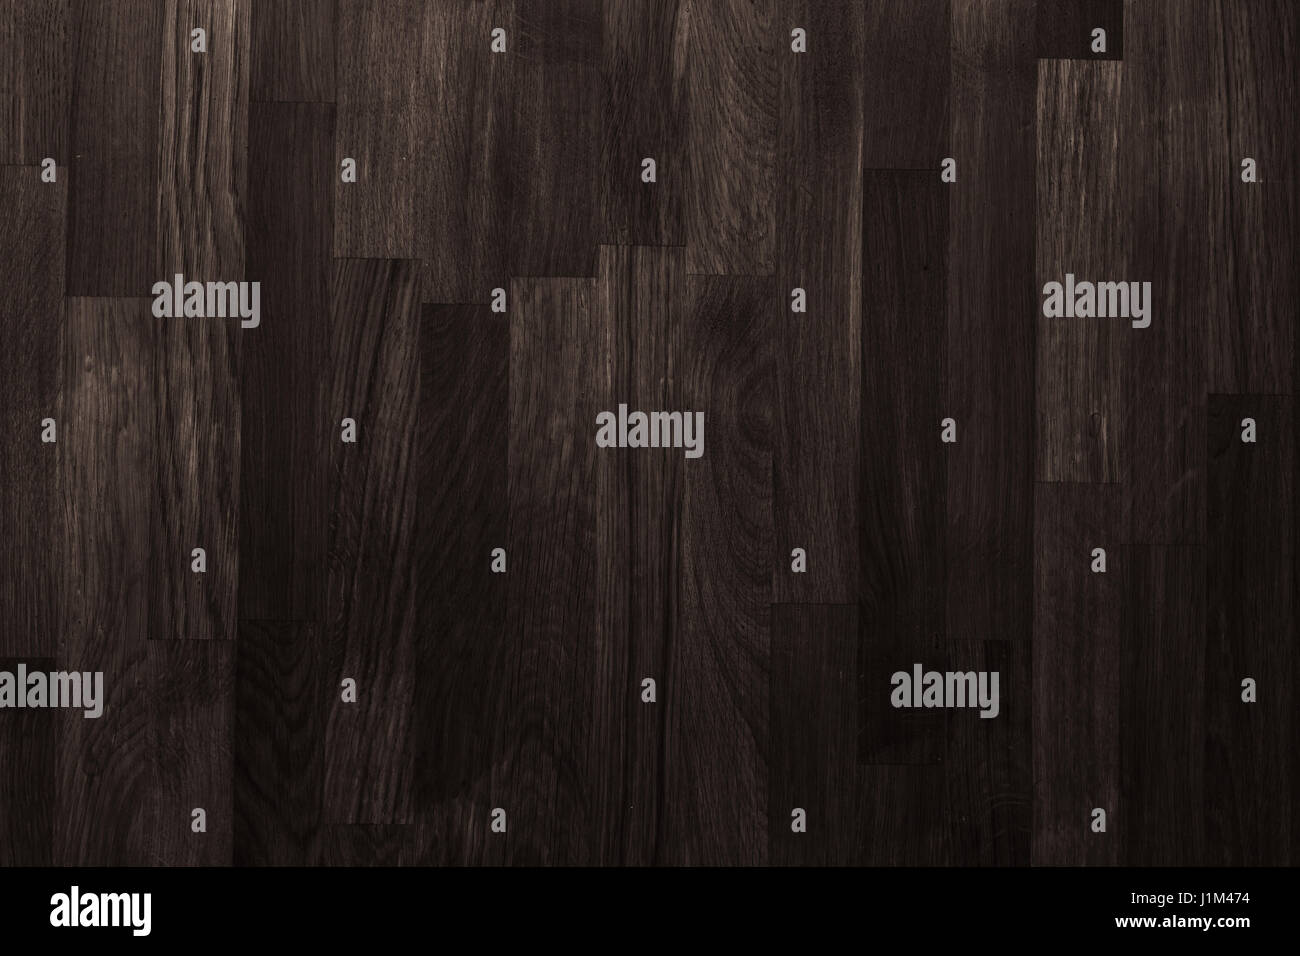 dark wooden plank texture background Stock Photo